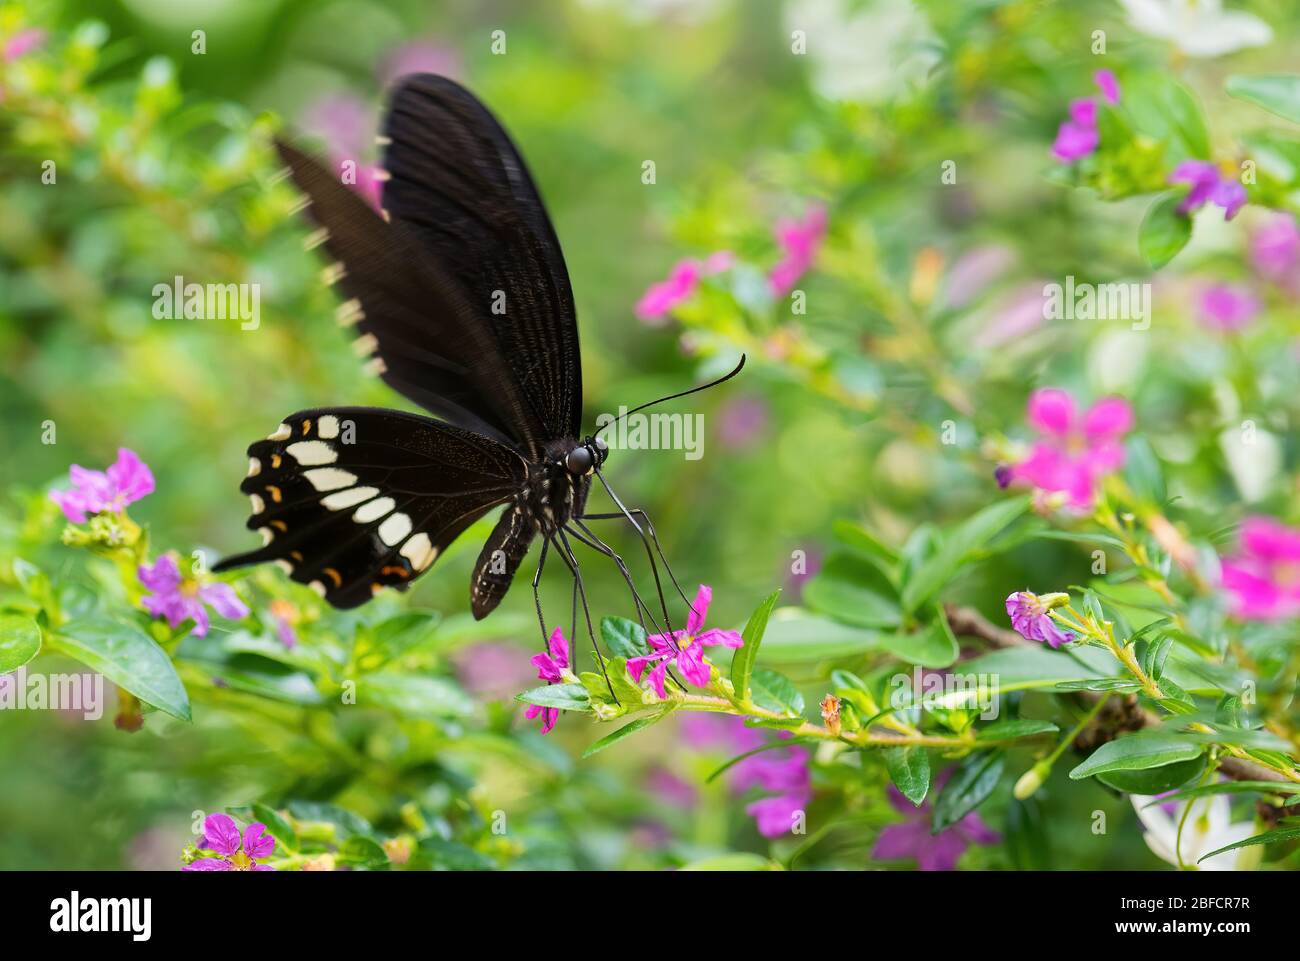 Mormon comune - Papilio politi, bella grande farfalla nera da prati e boschi del sud-est asiatico, Malesia. Foto Stock